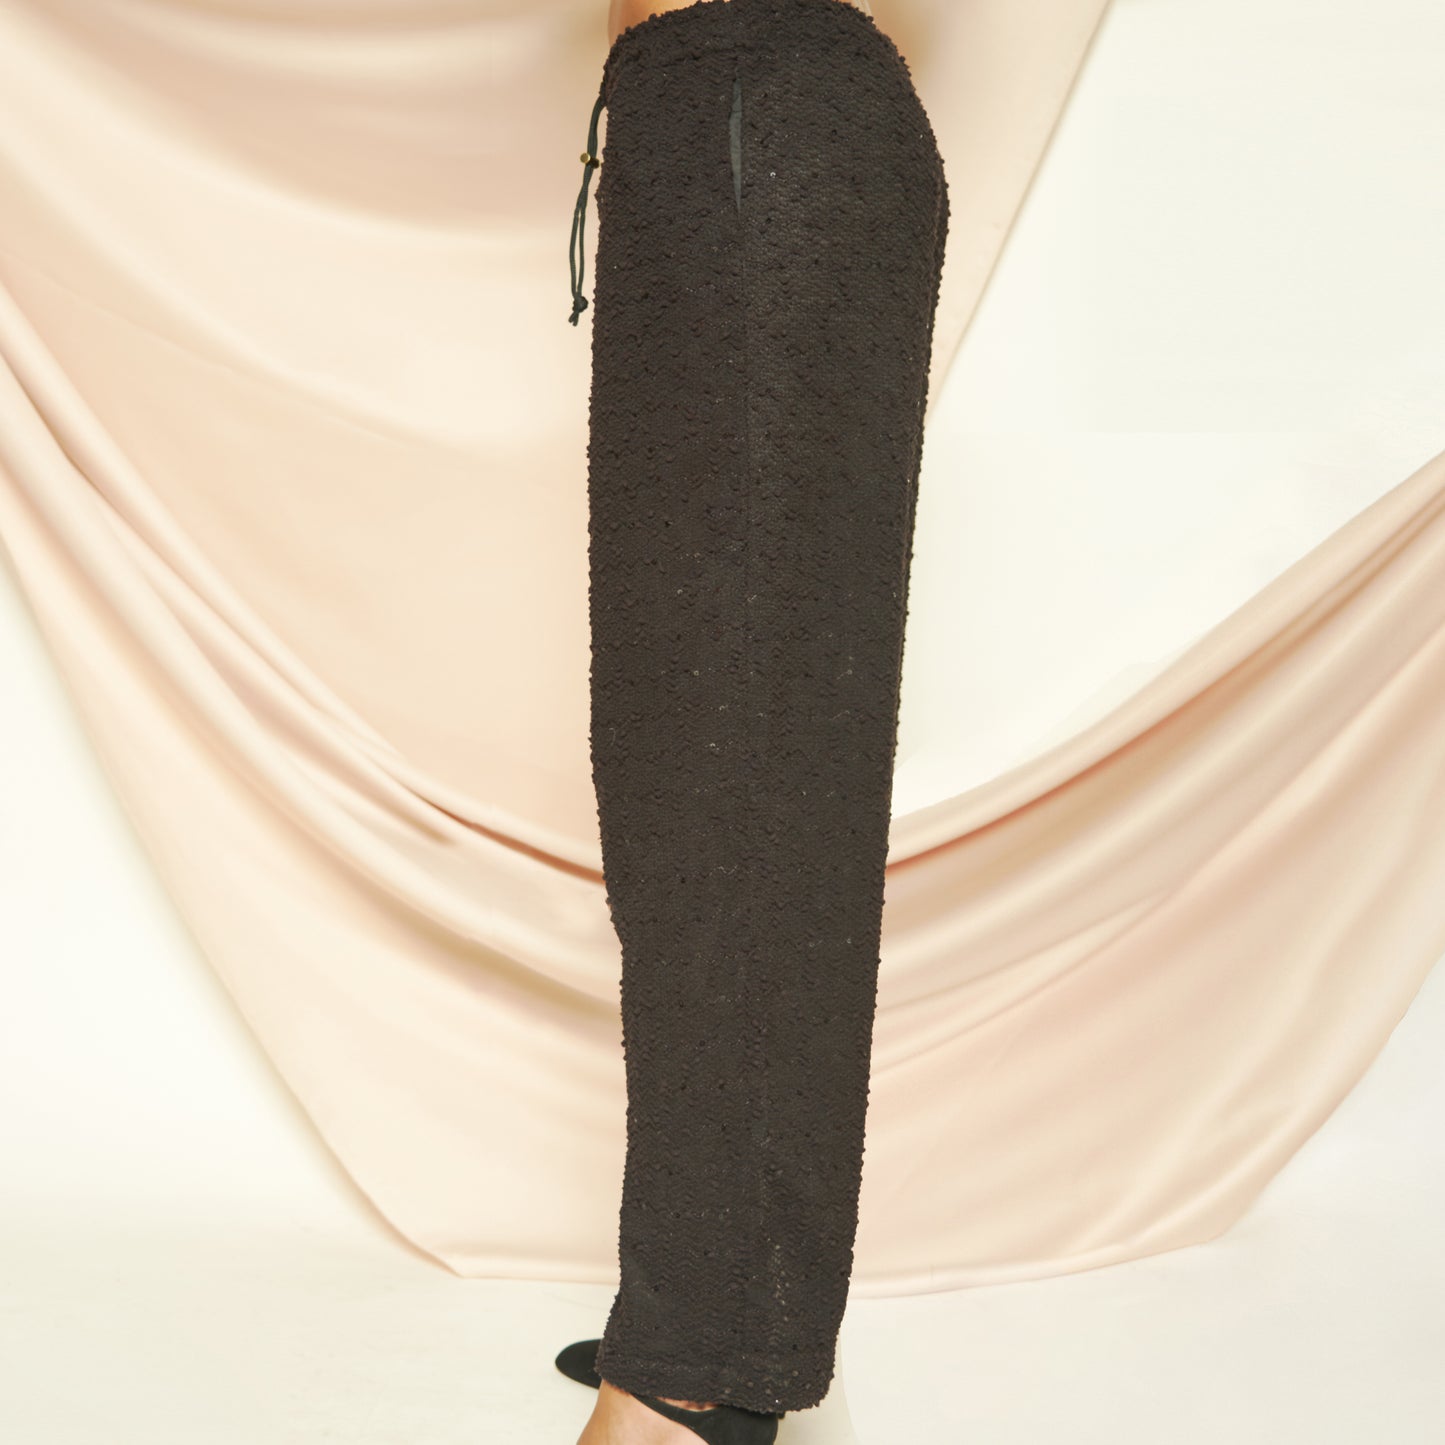 Black Sequin Pants (All Gender)